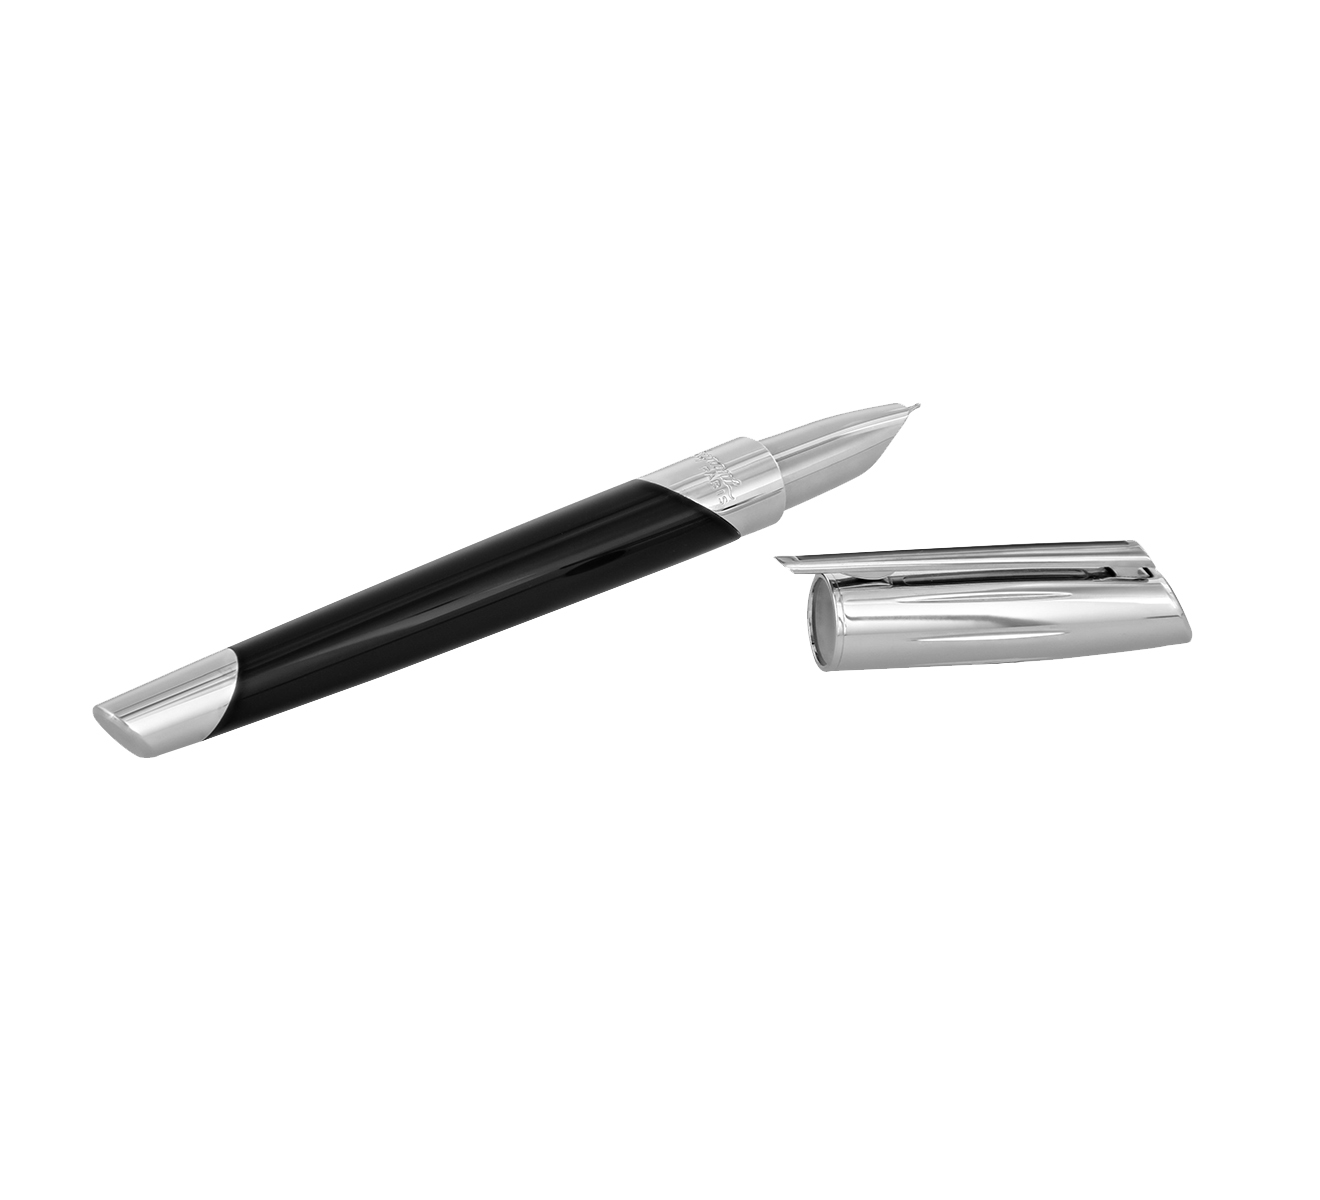 Перьевая ручка S.T. Dupont Defi Millenium 400706 - фото 3 – Mercury